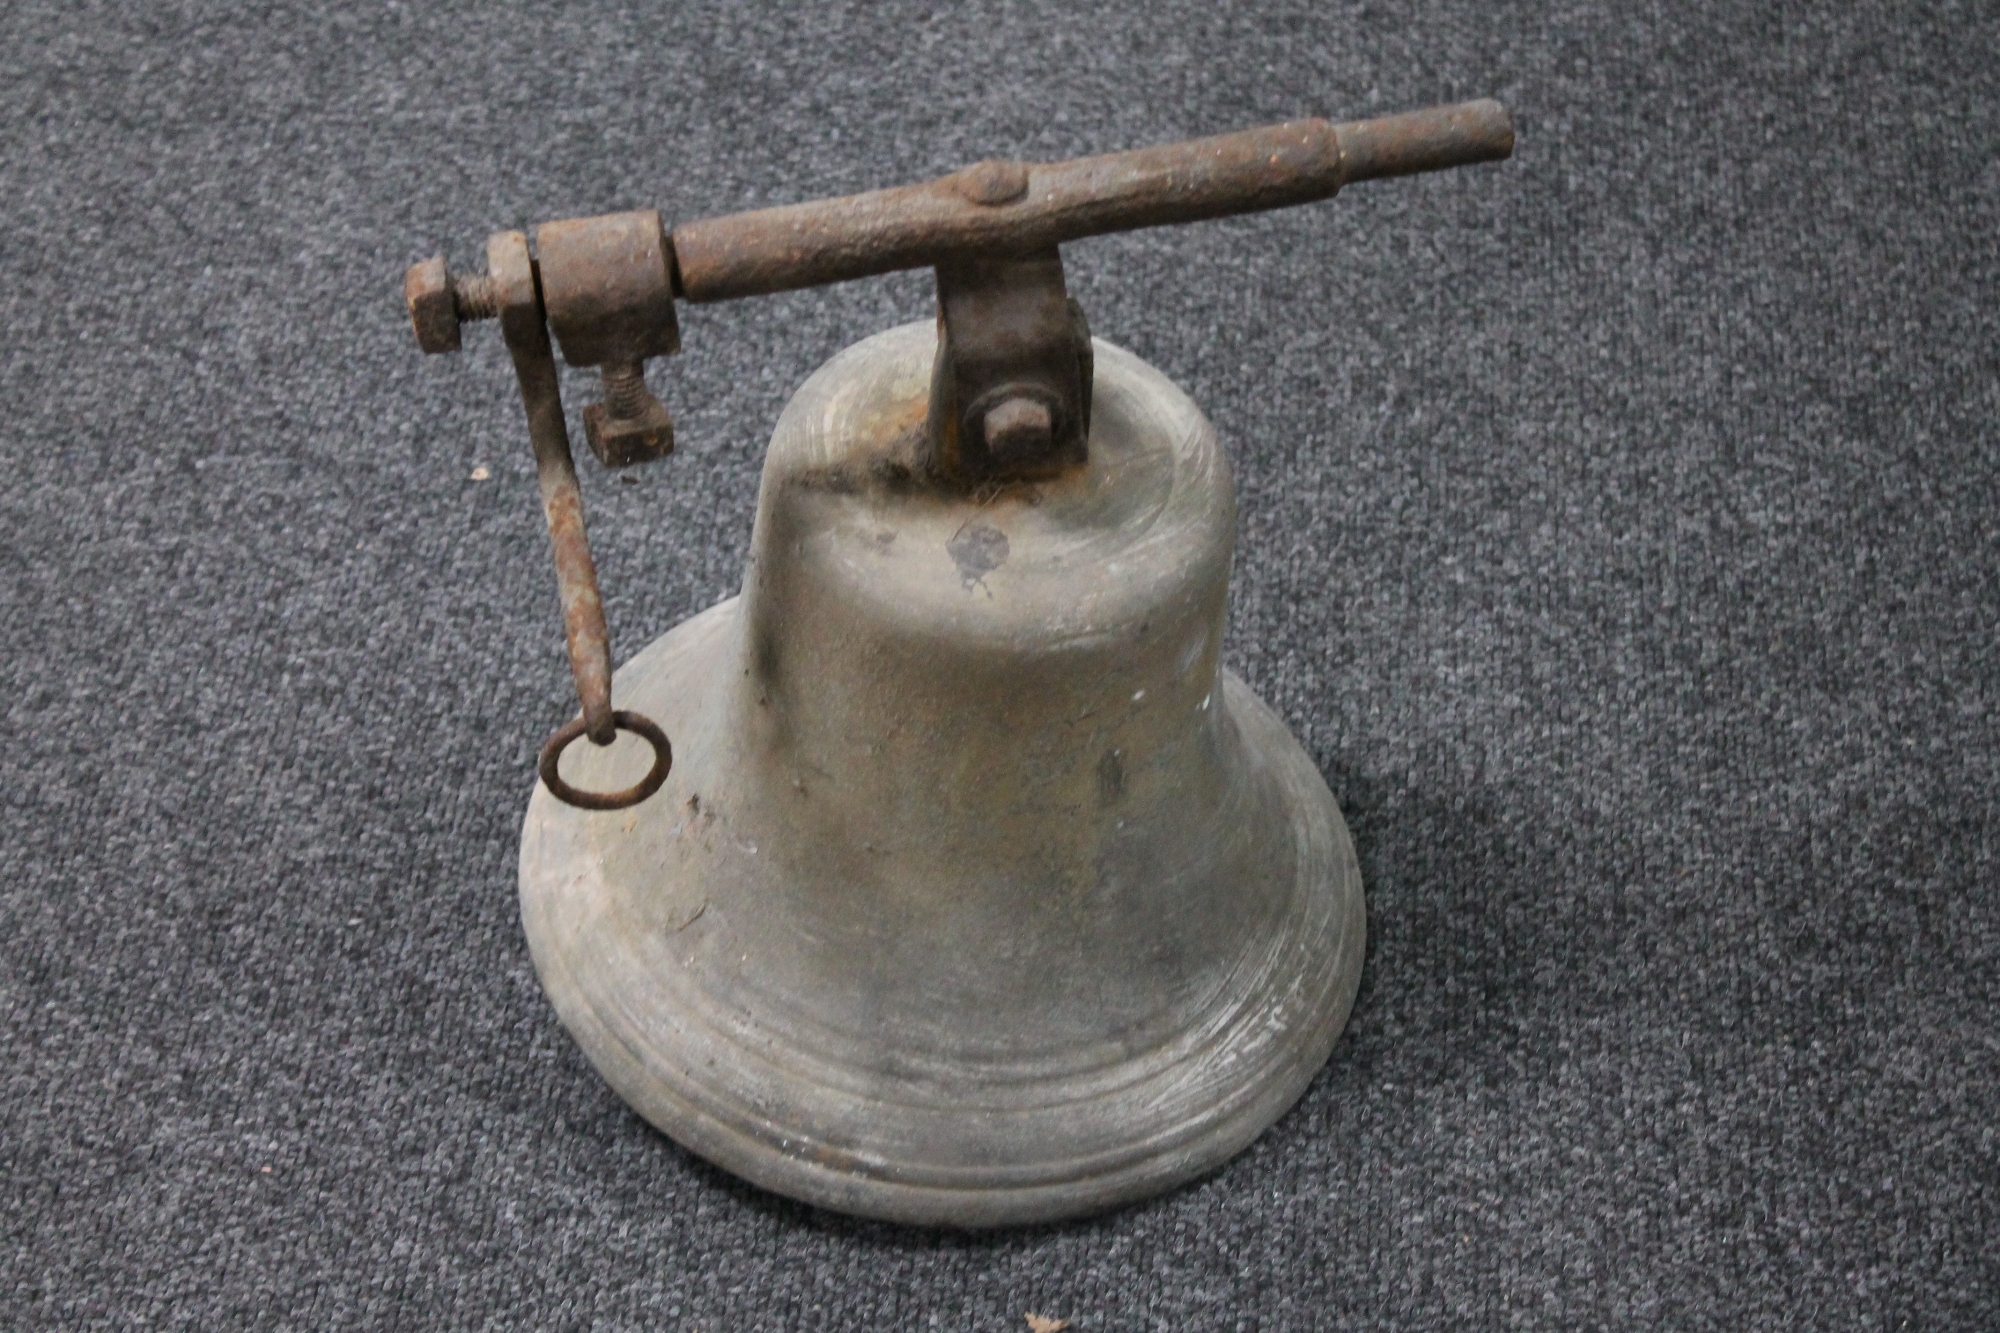 An antique cast metal church bell with bracket